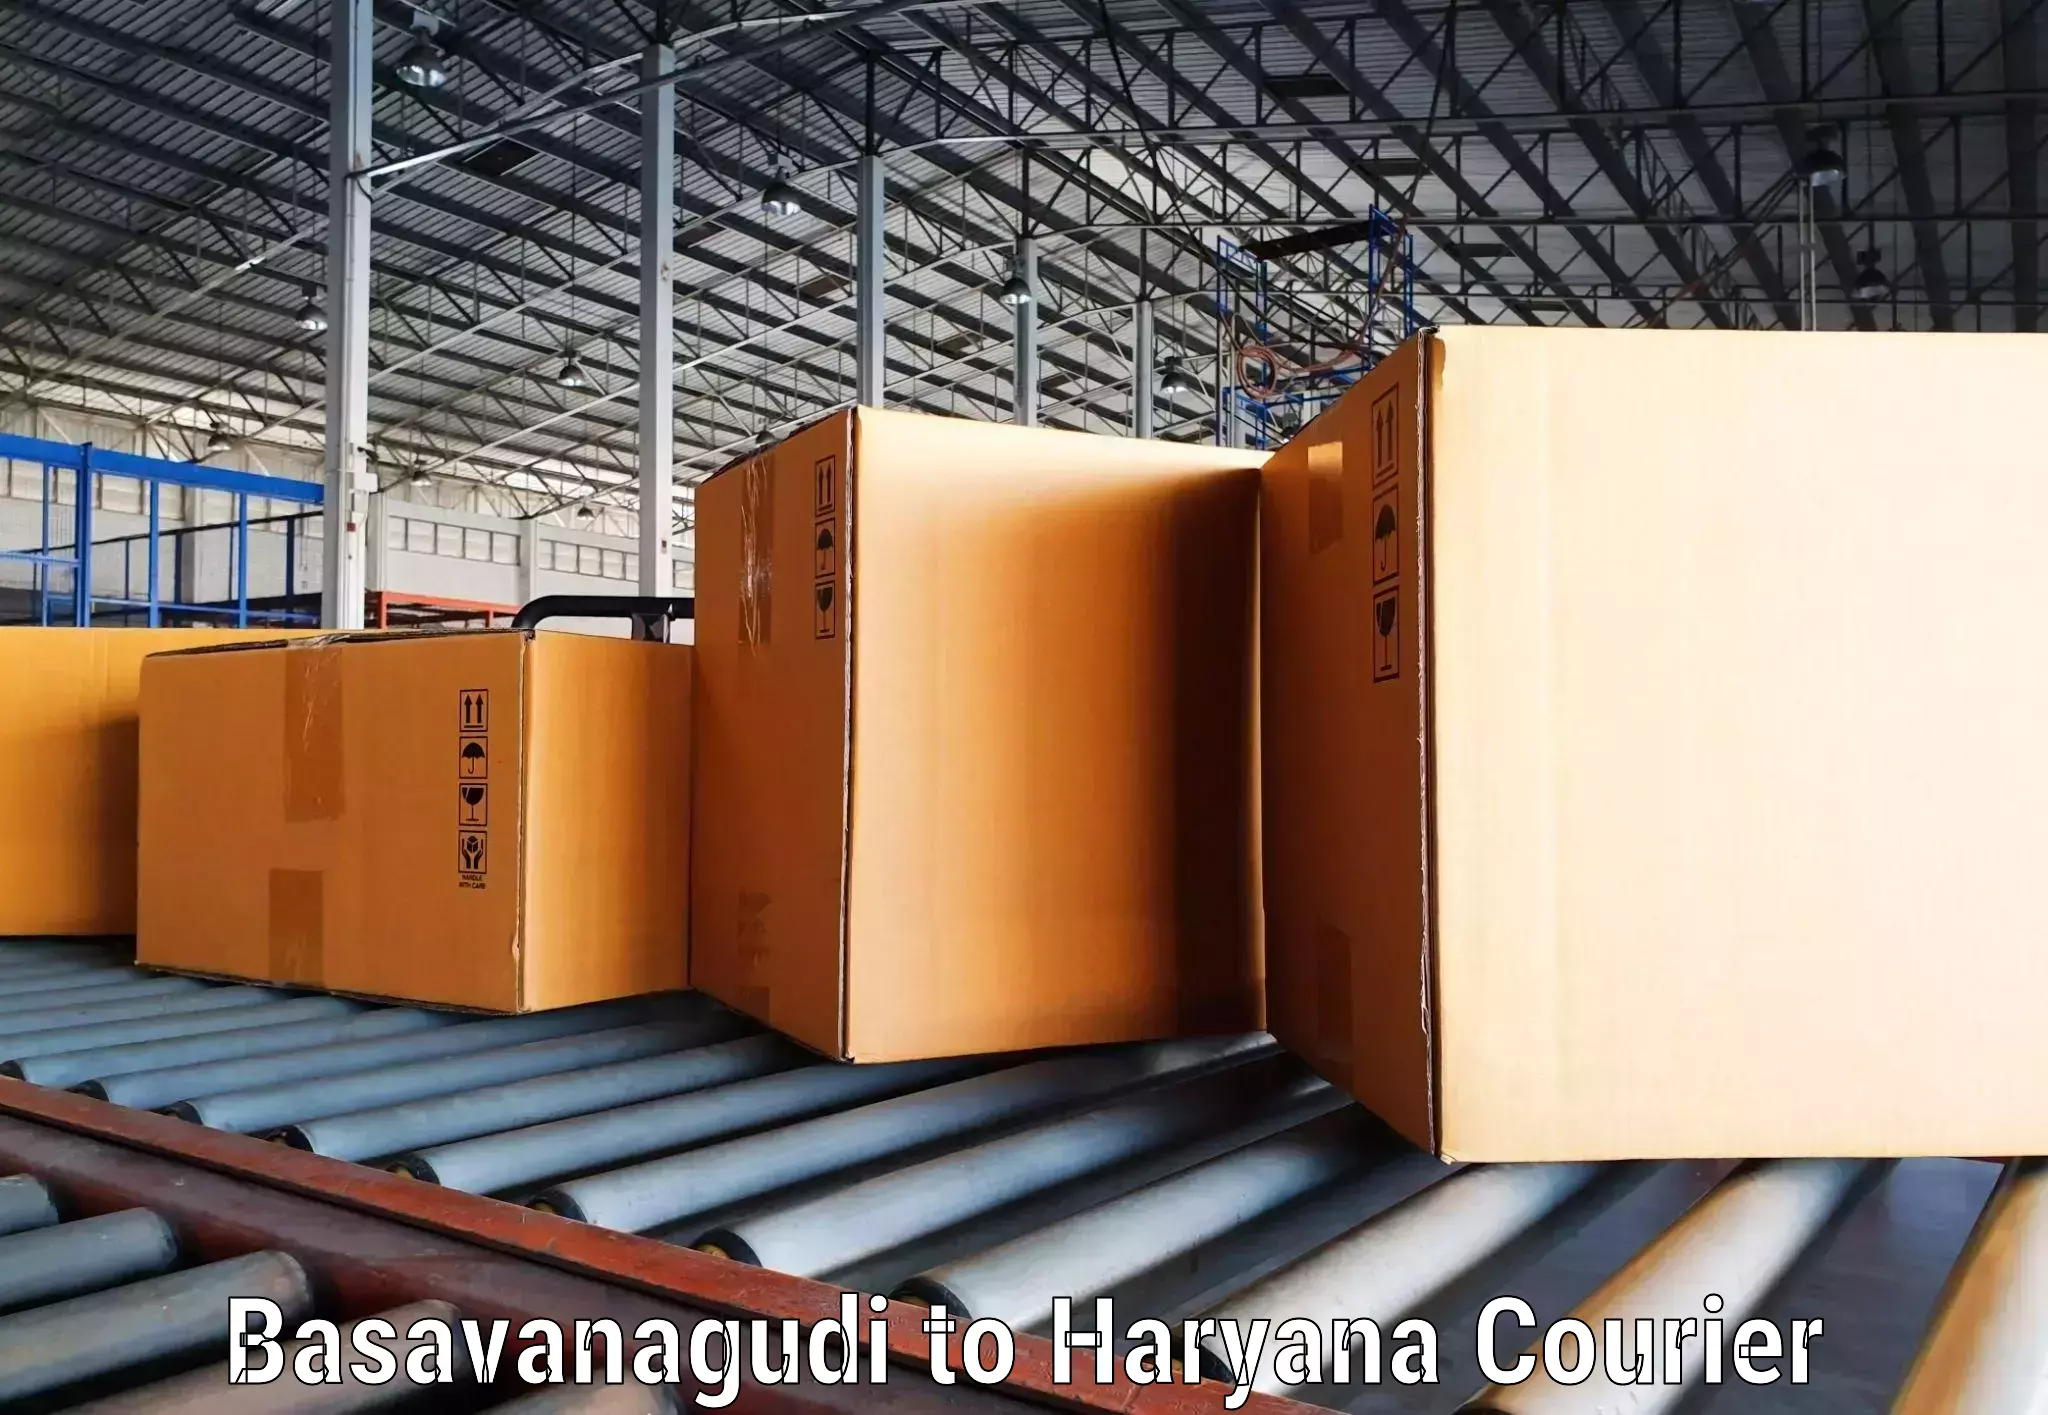 Heavy parcel delivery Basavanagudi to NCR Haryana